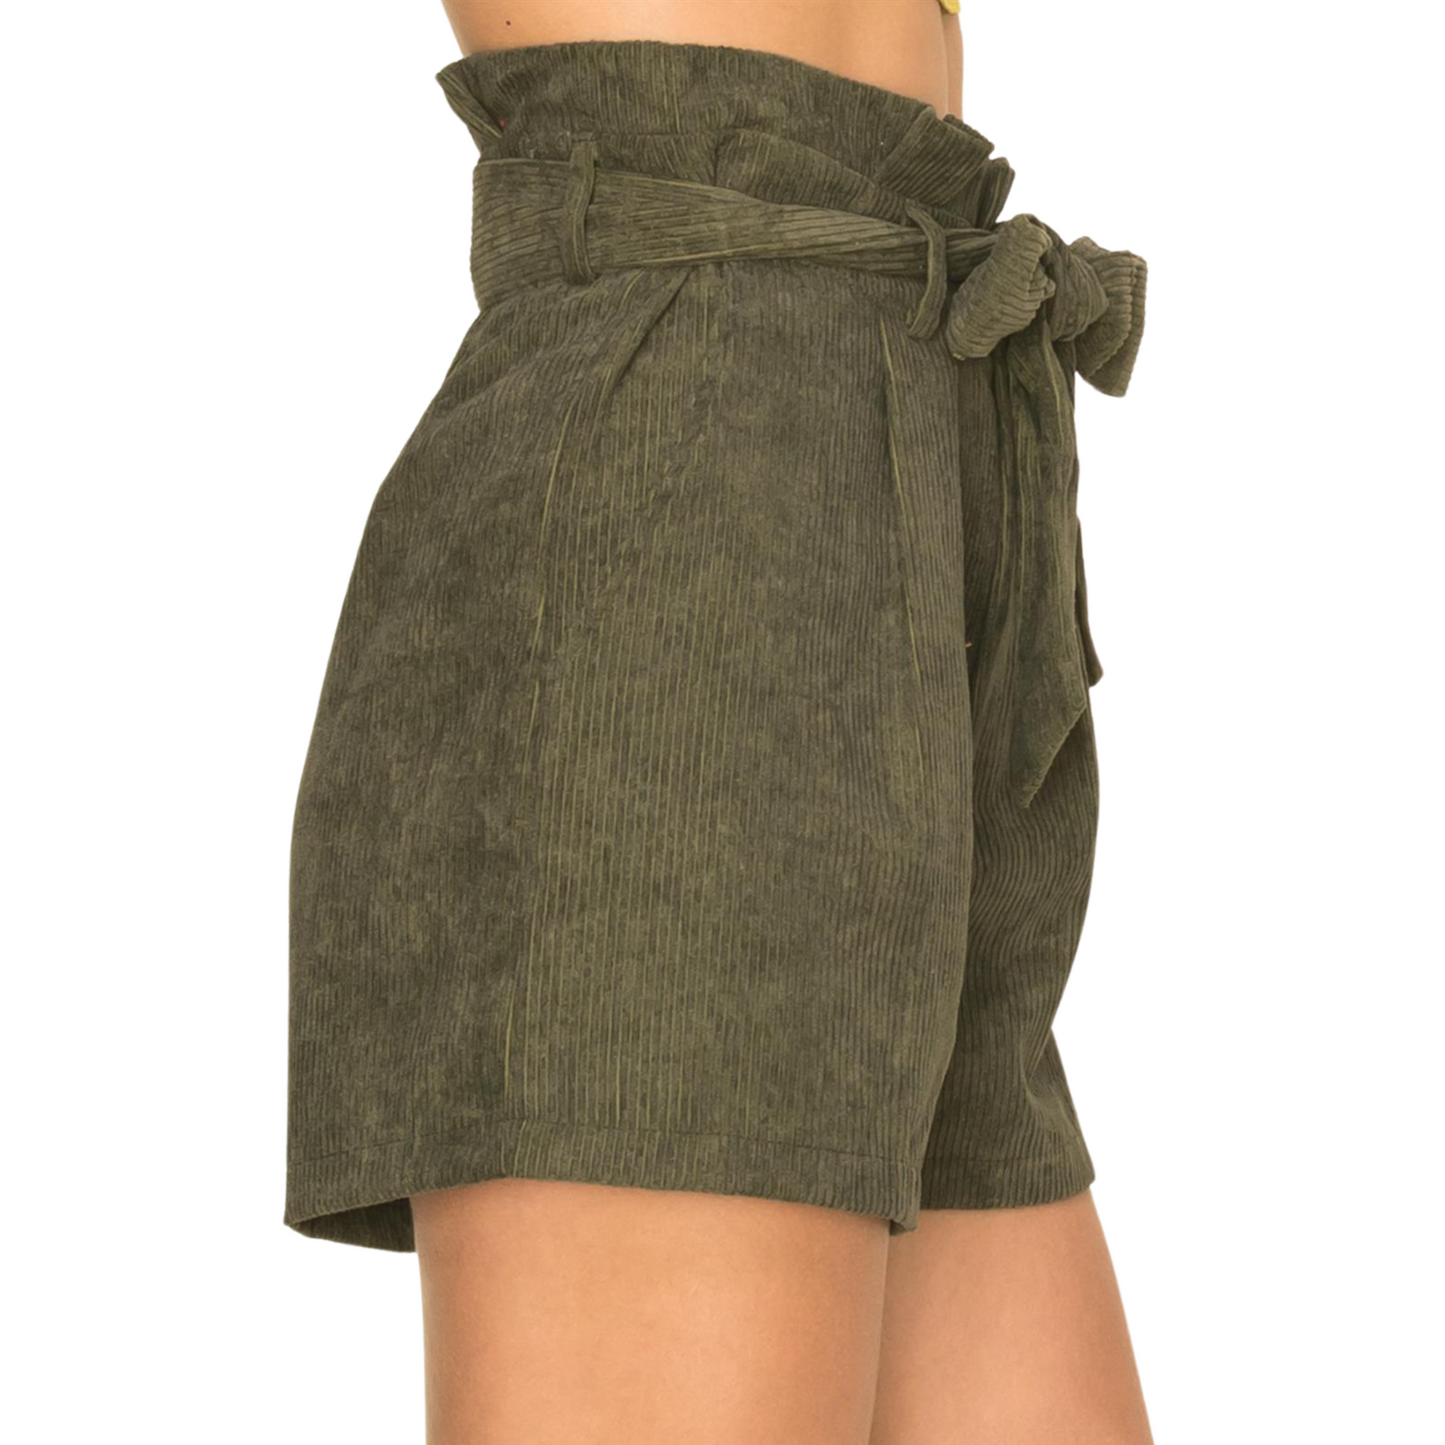 Hyfve Corduroy Belted Soft Shorts Mauve or Olive (S-L)